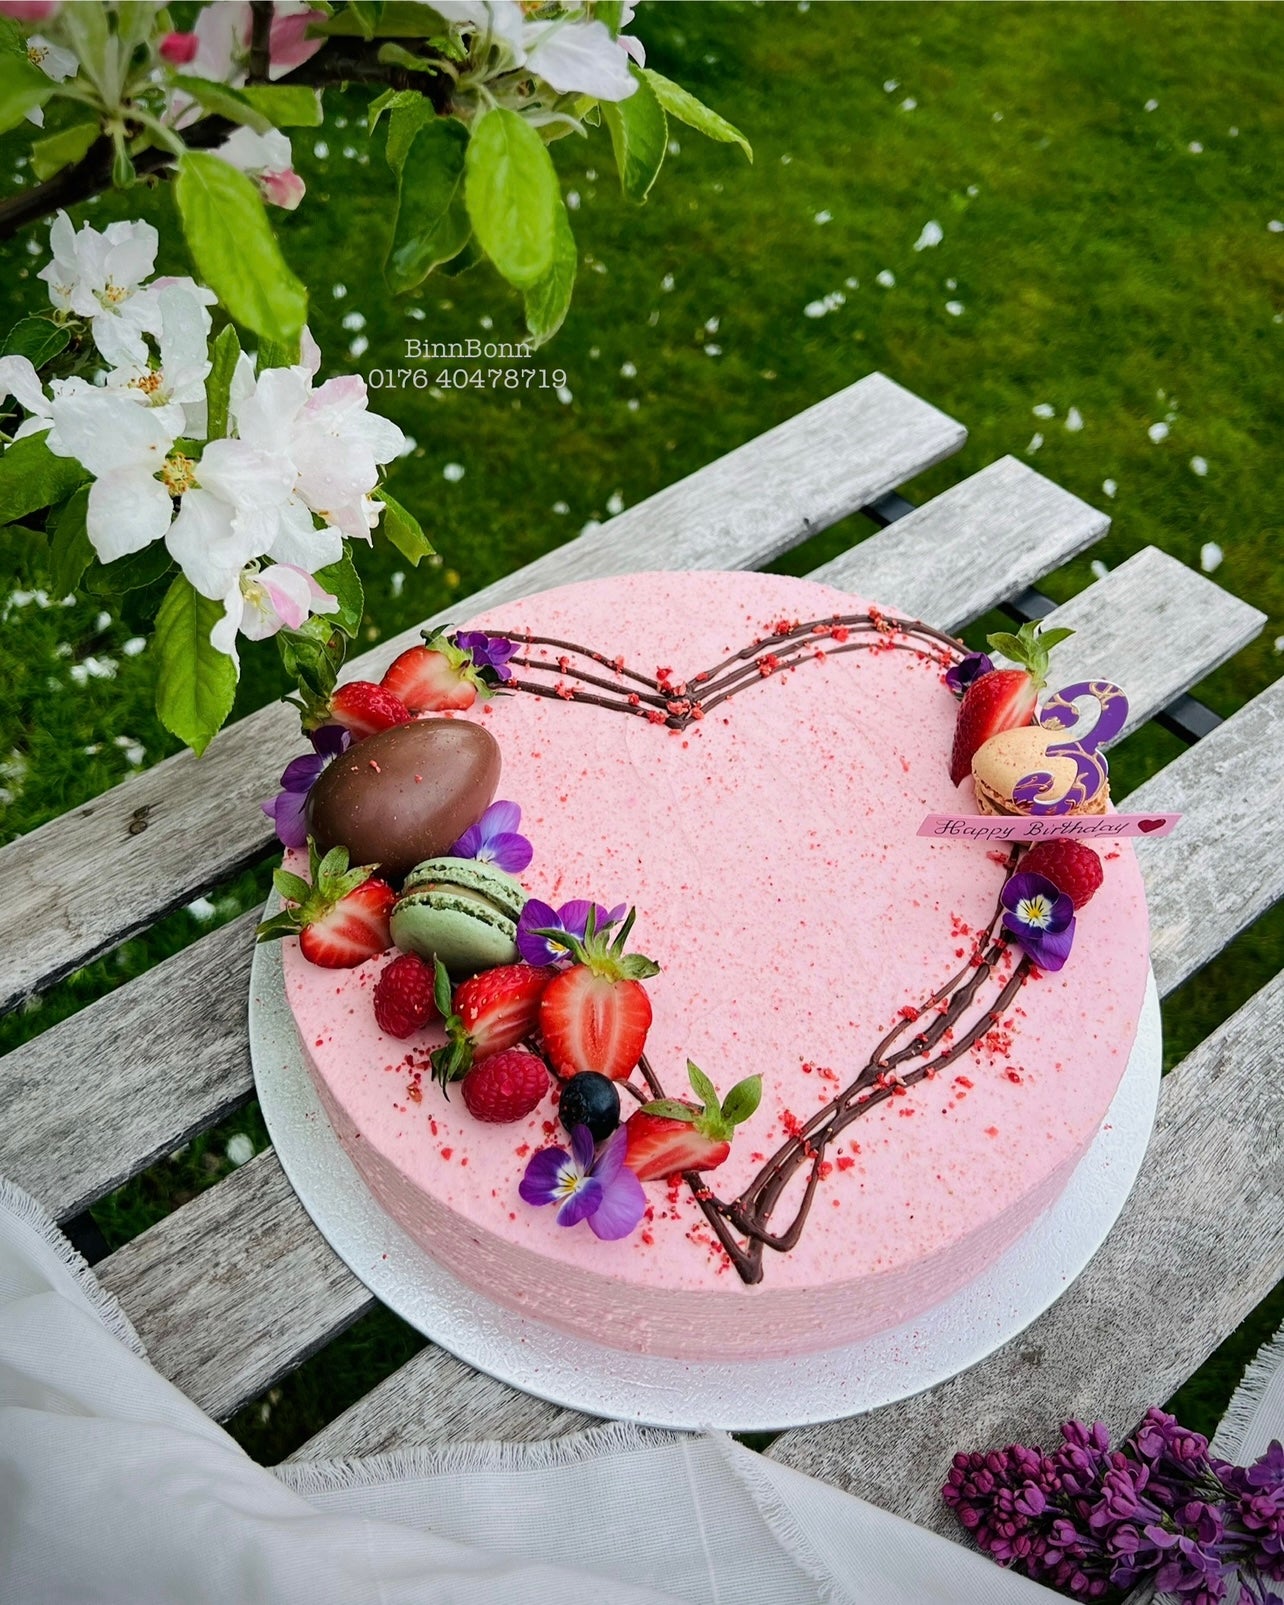 63. Torte "Love you" mit frischen Beeren und Kinder Überraschungsei 26 cm